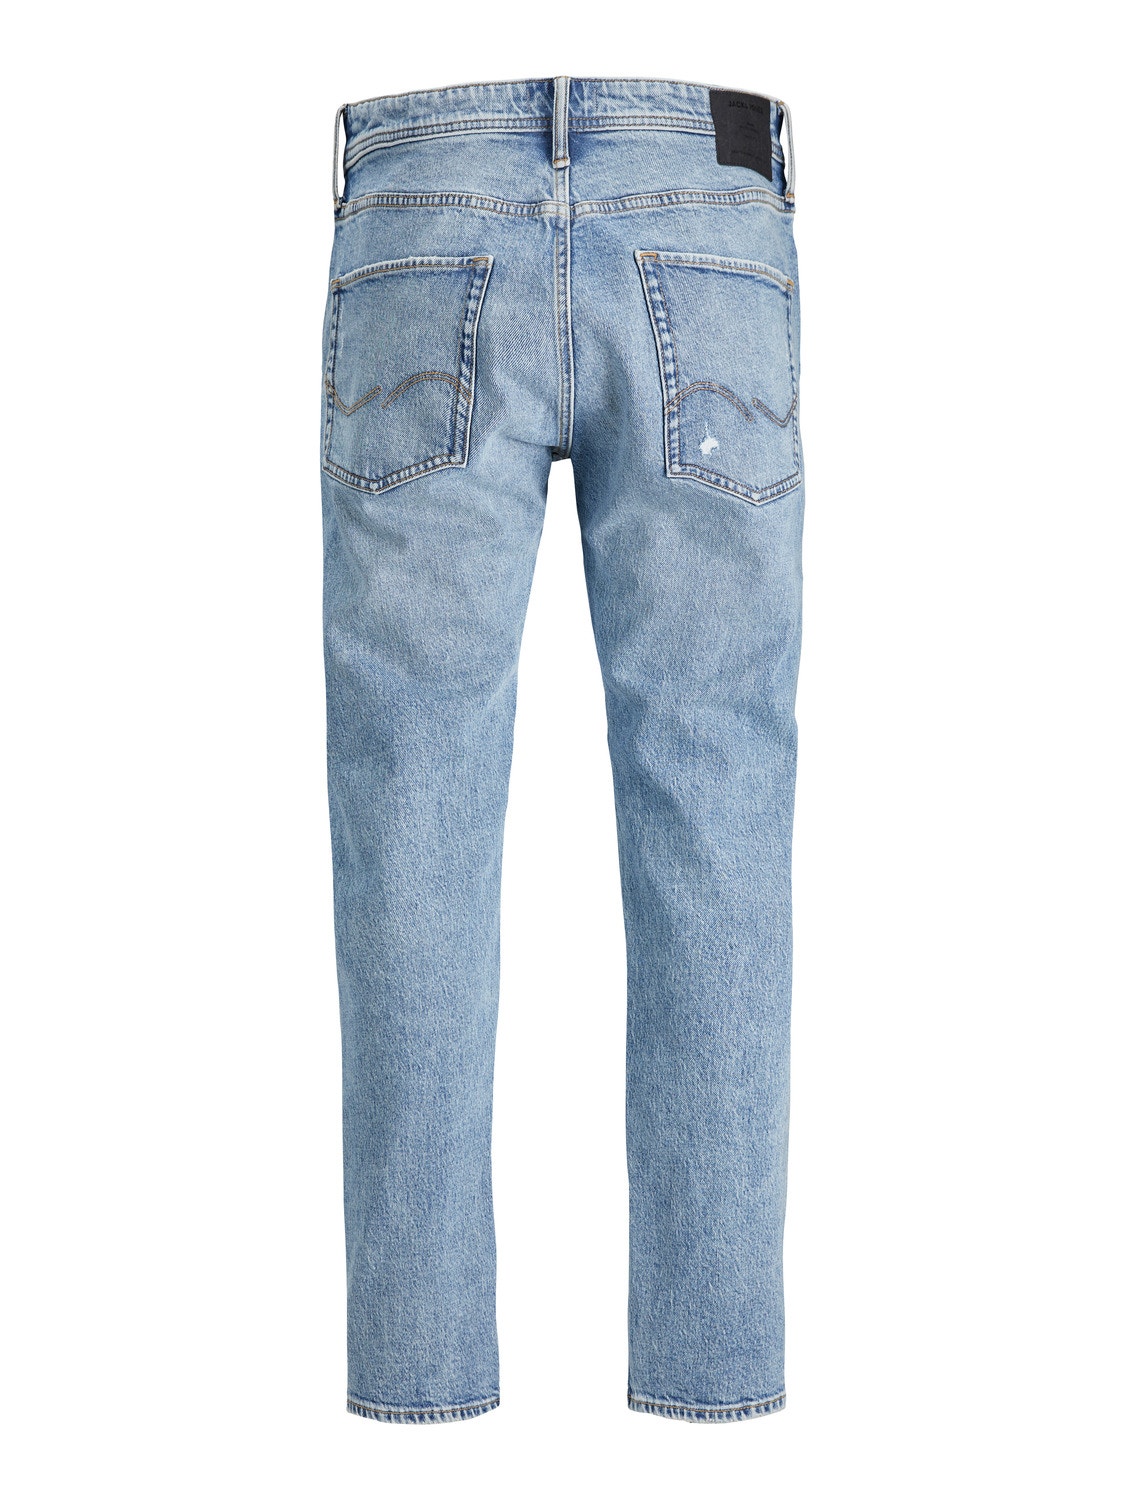 Jack & Jones JJIMIKE JJORIGINAL CB 232 BF Jeans Tapered Fit -Blue Denim - 12246904